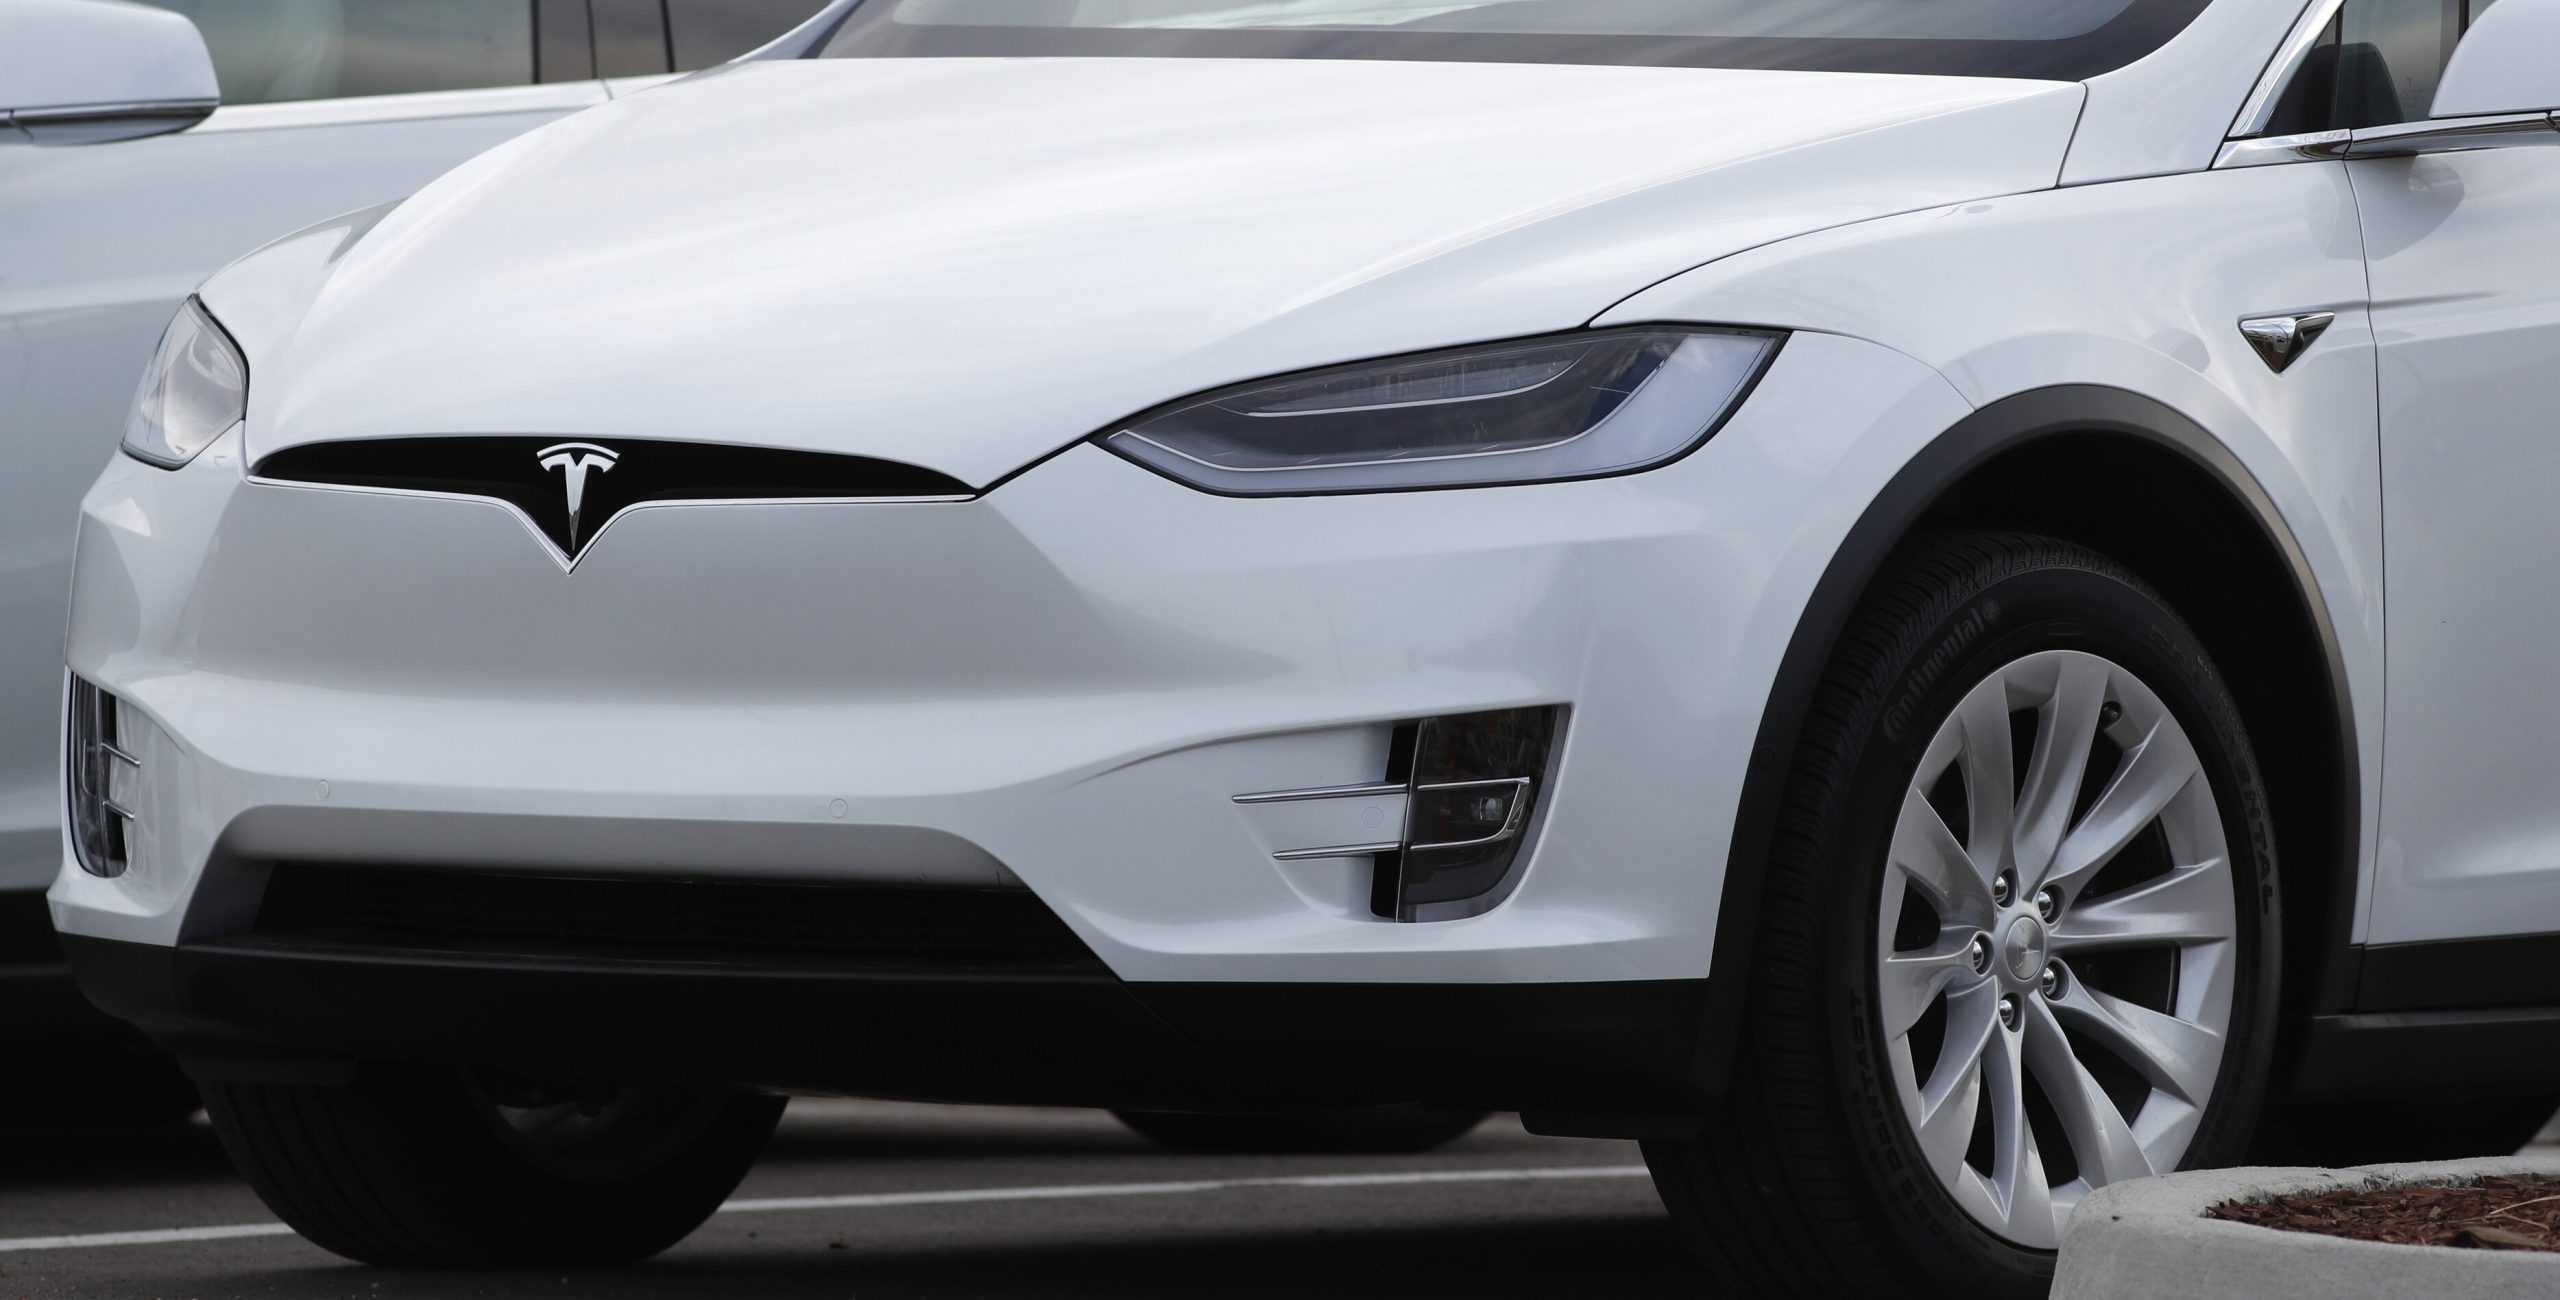 Două persoane au decedat după ce un autoturism Tesla fără șofer a făcut accident